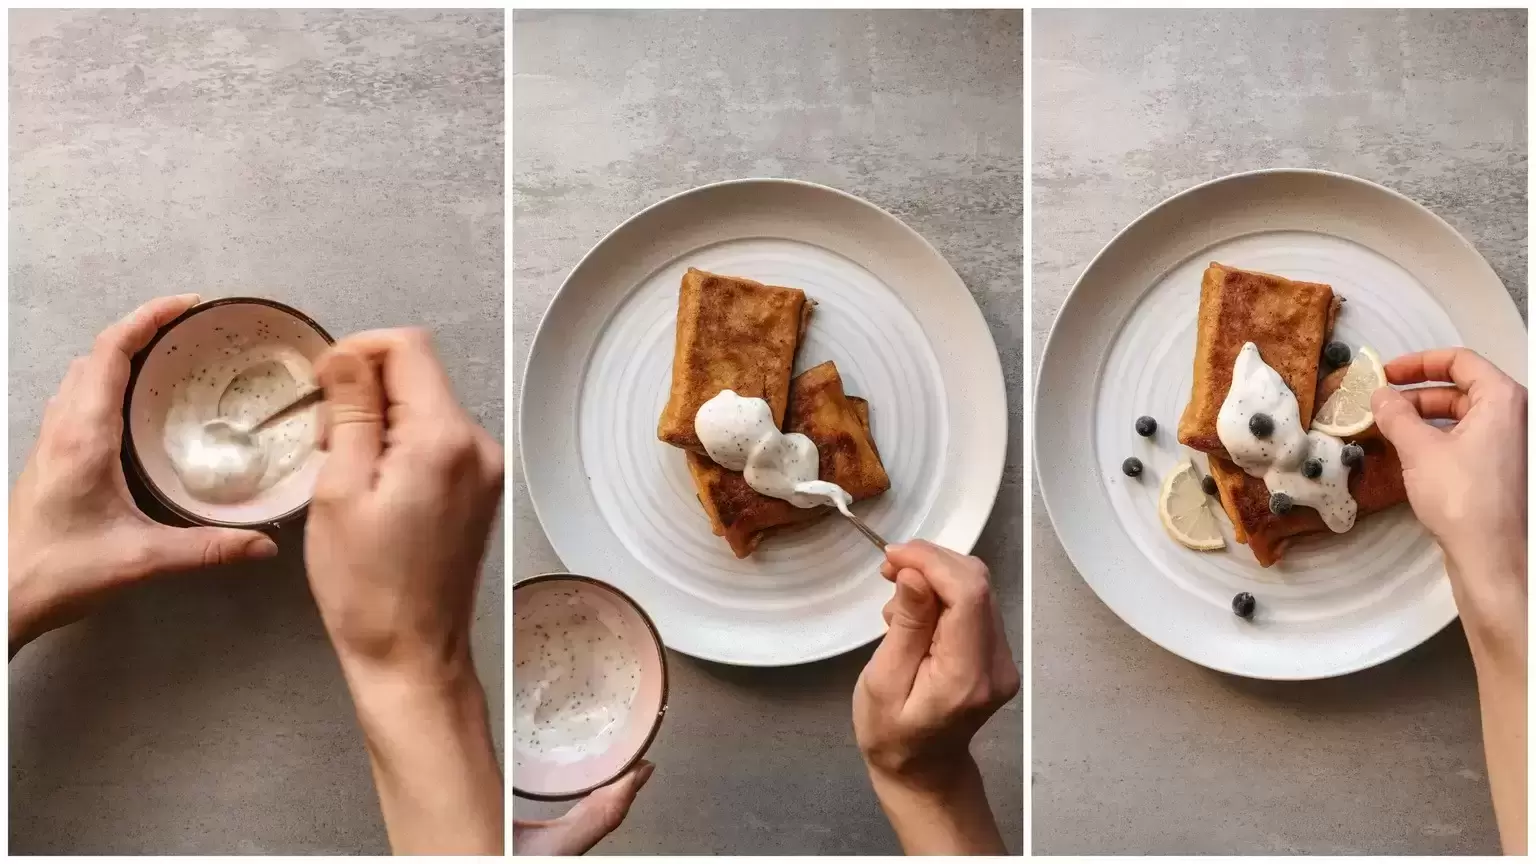 Maisto tinklaraštininkė siūlo, kaip greitai paruošti šventinius pusryčius